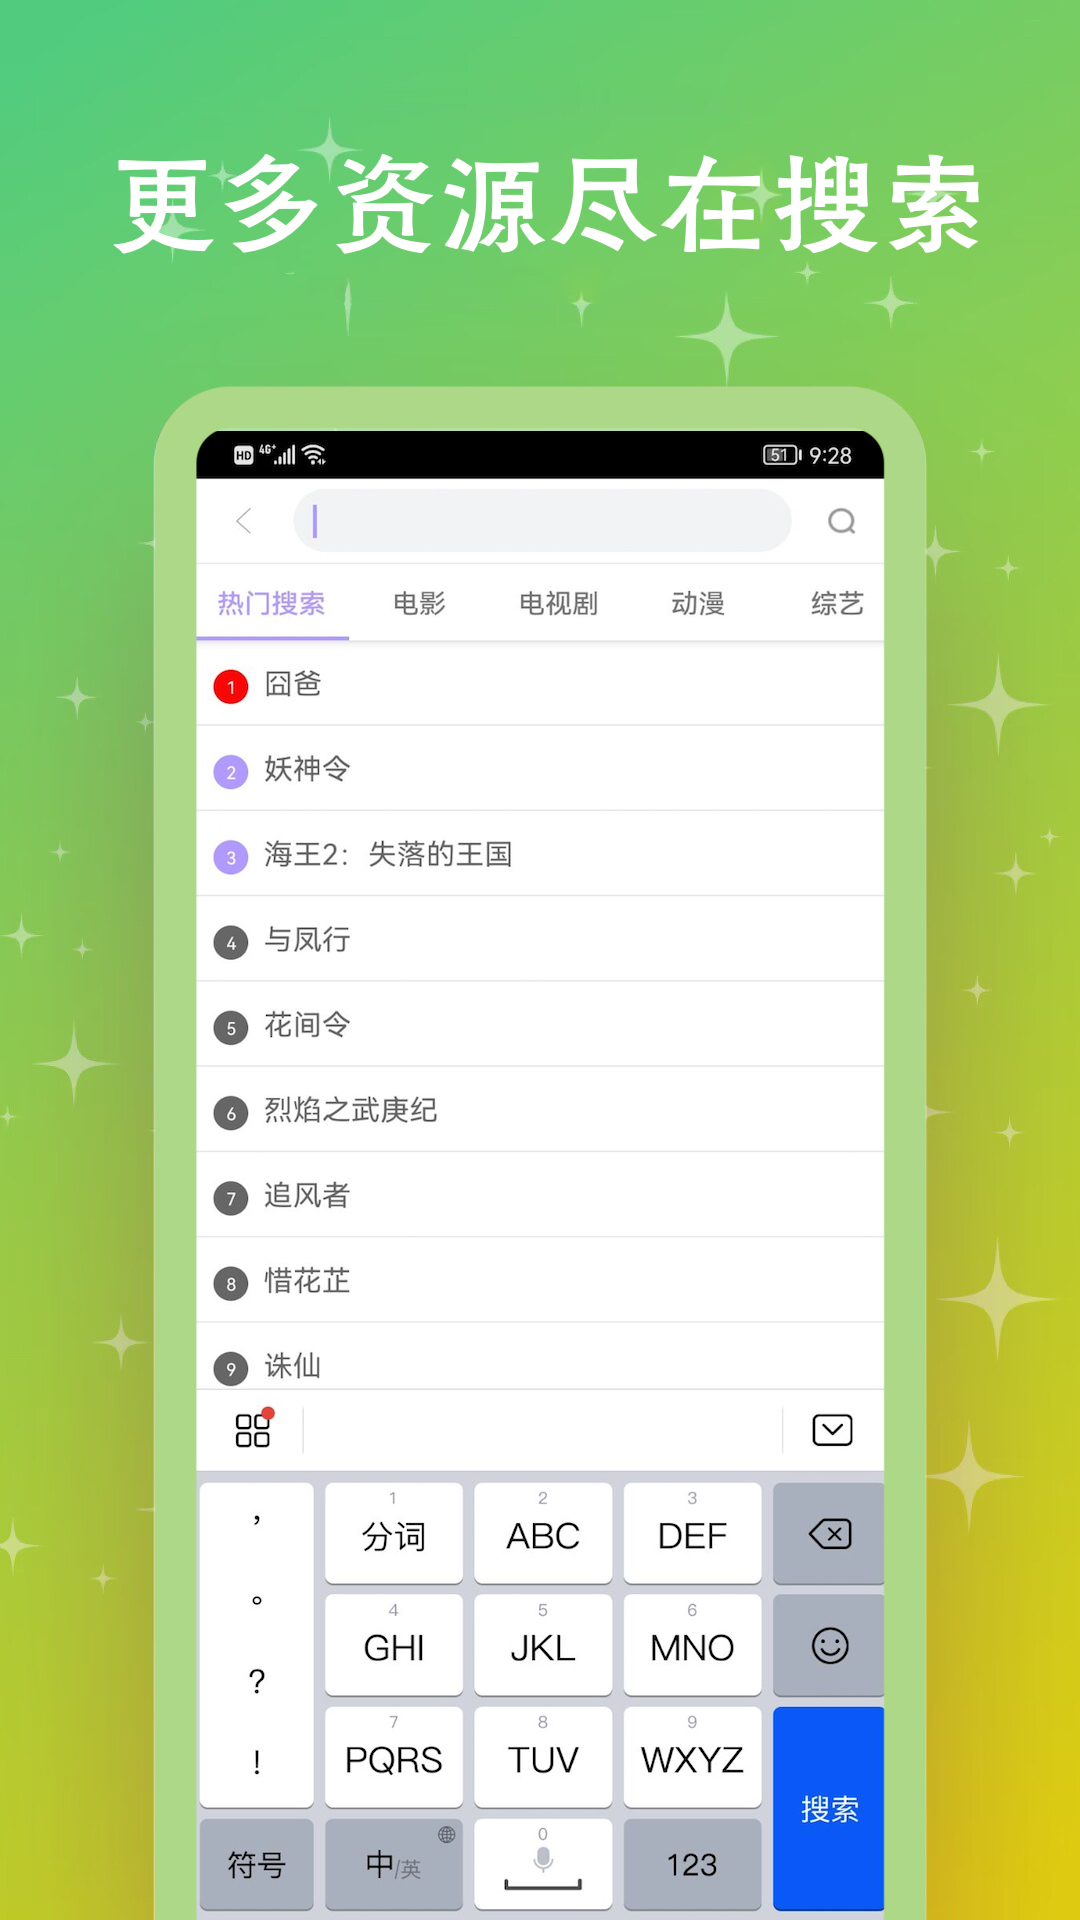 黑猪侠影视app官方下载2.1版本截图1: